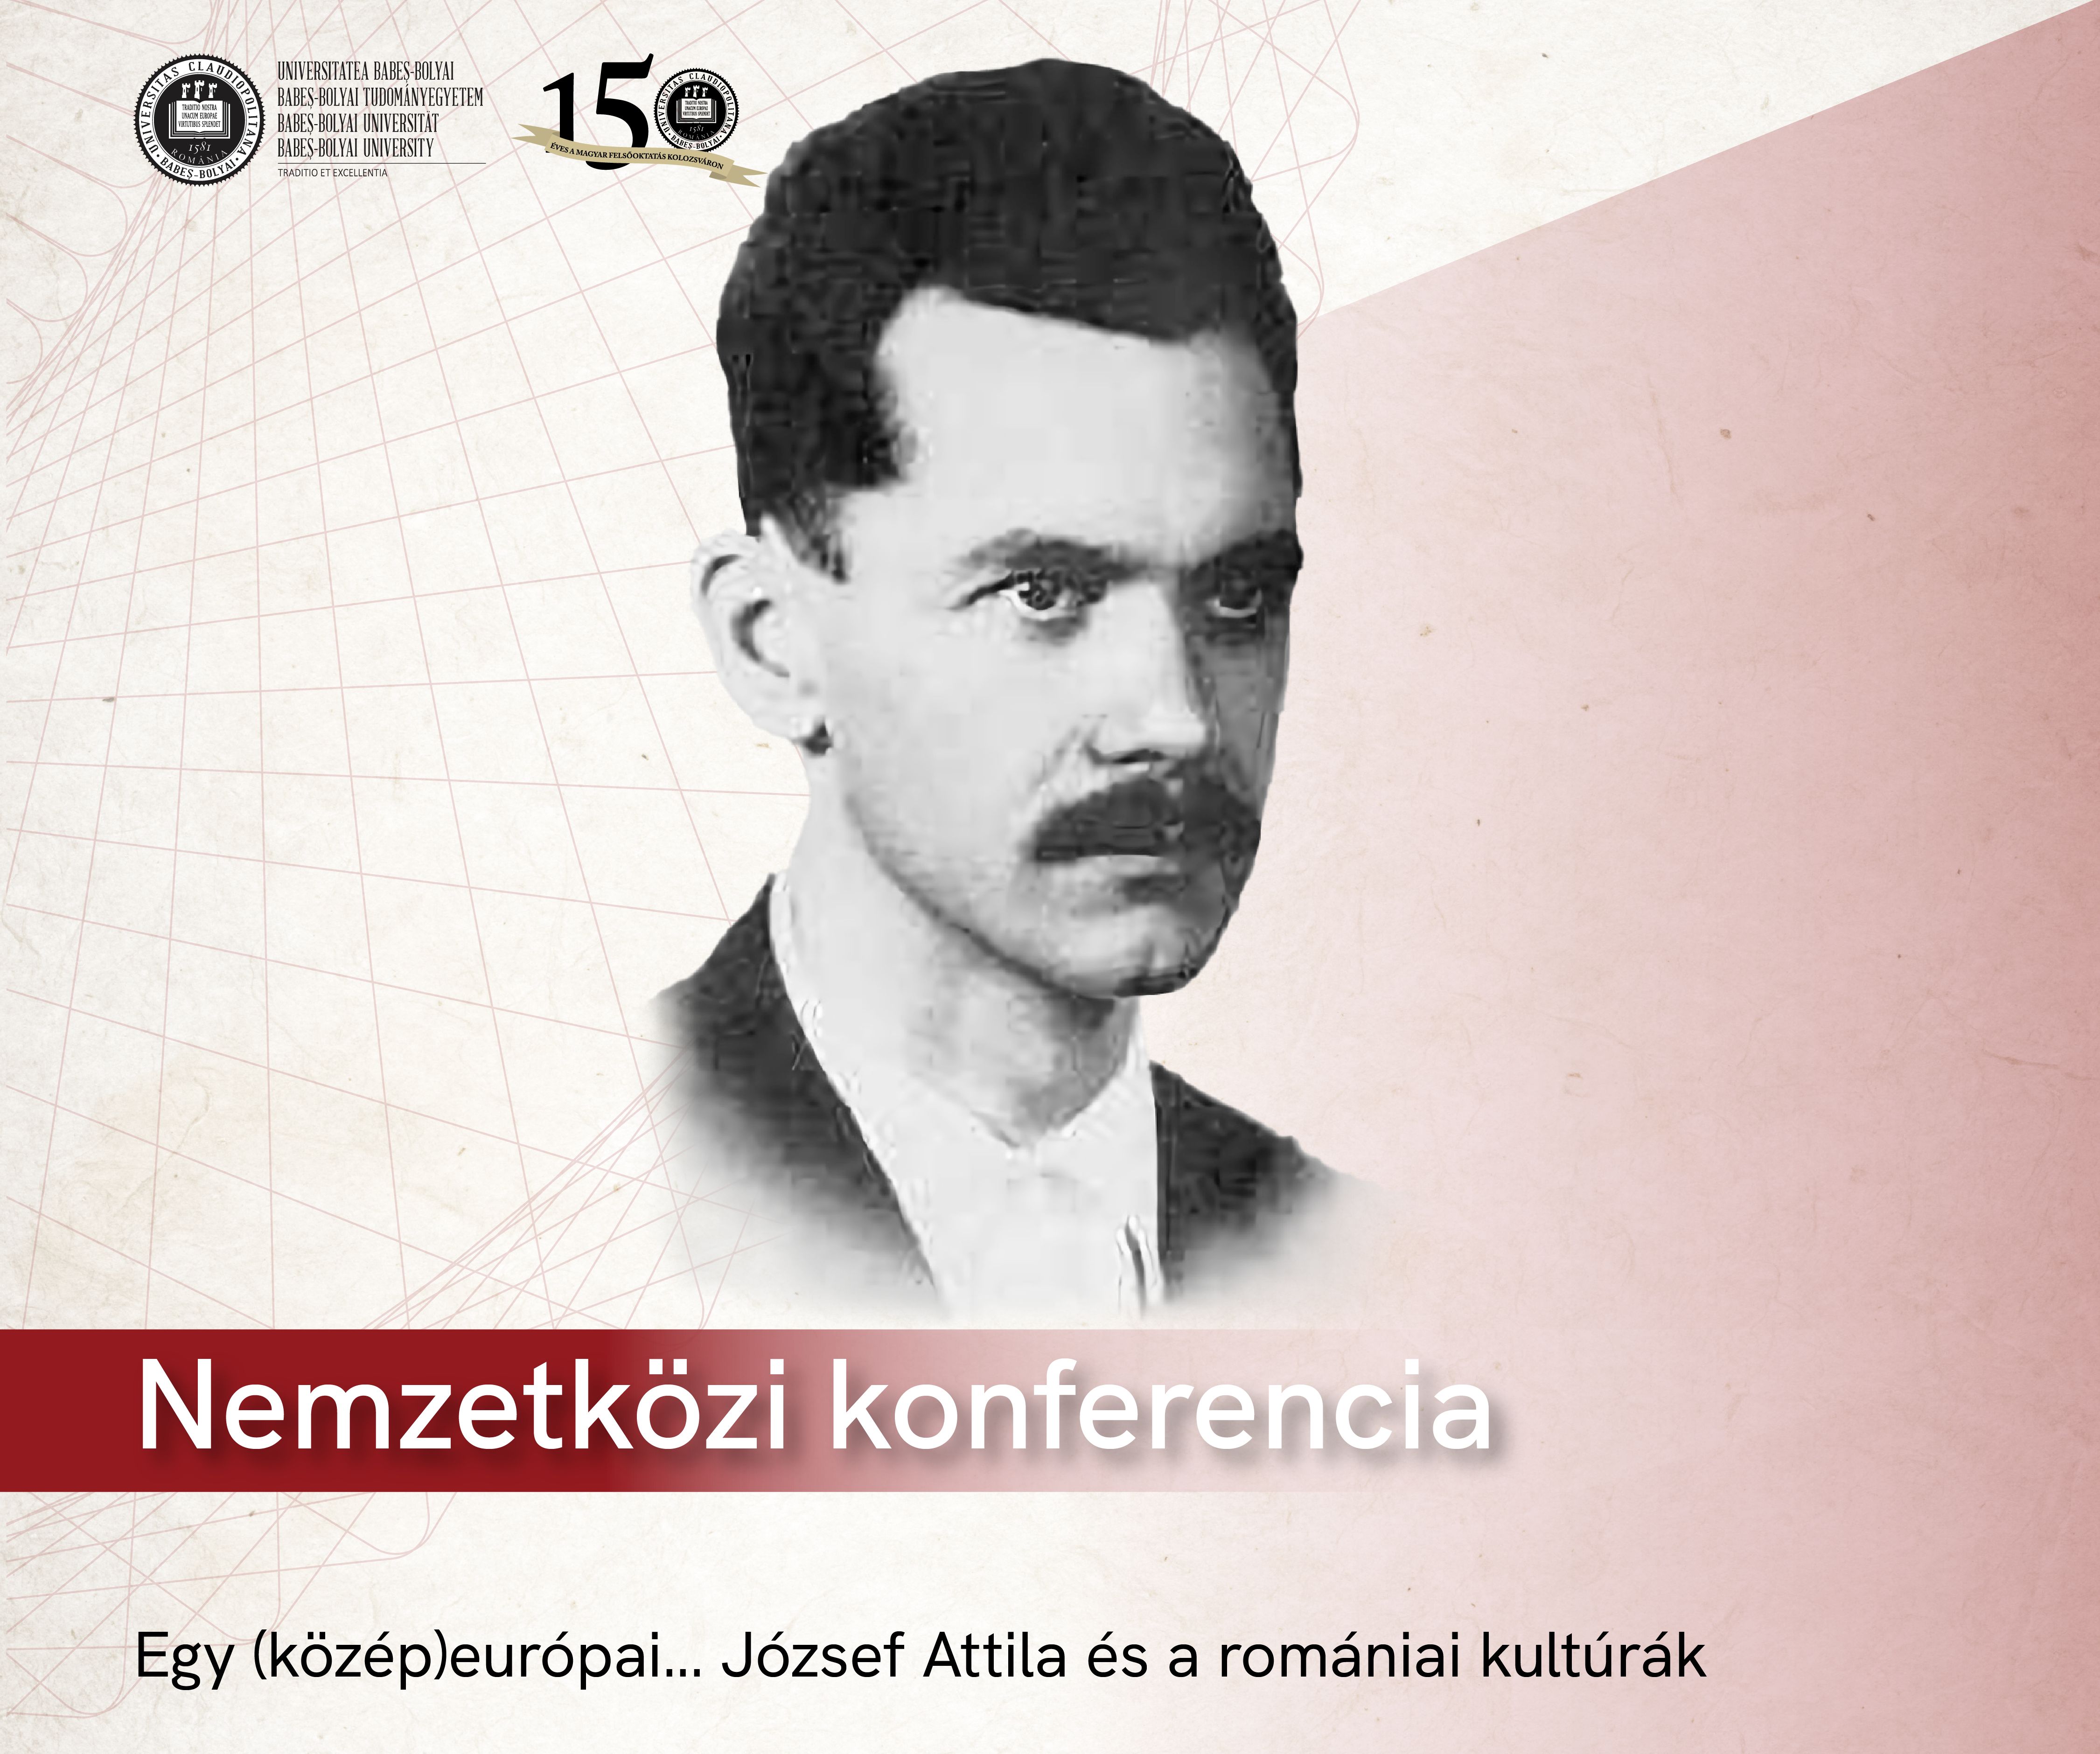 József Attila és a romániai kultúrák – beszámoló a kolozsvári konferenciáról